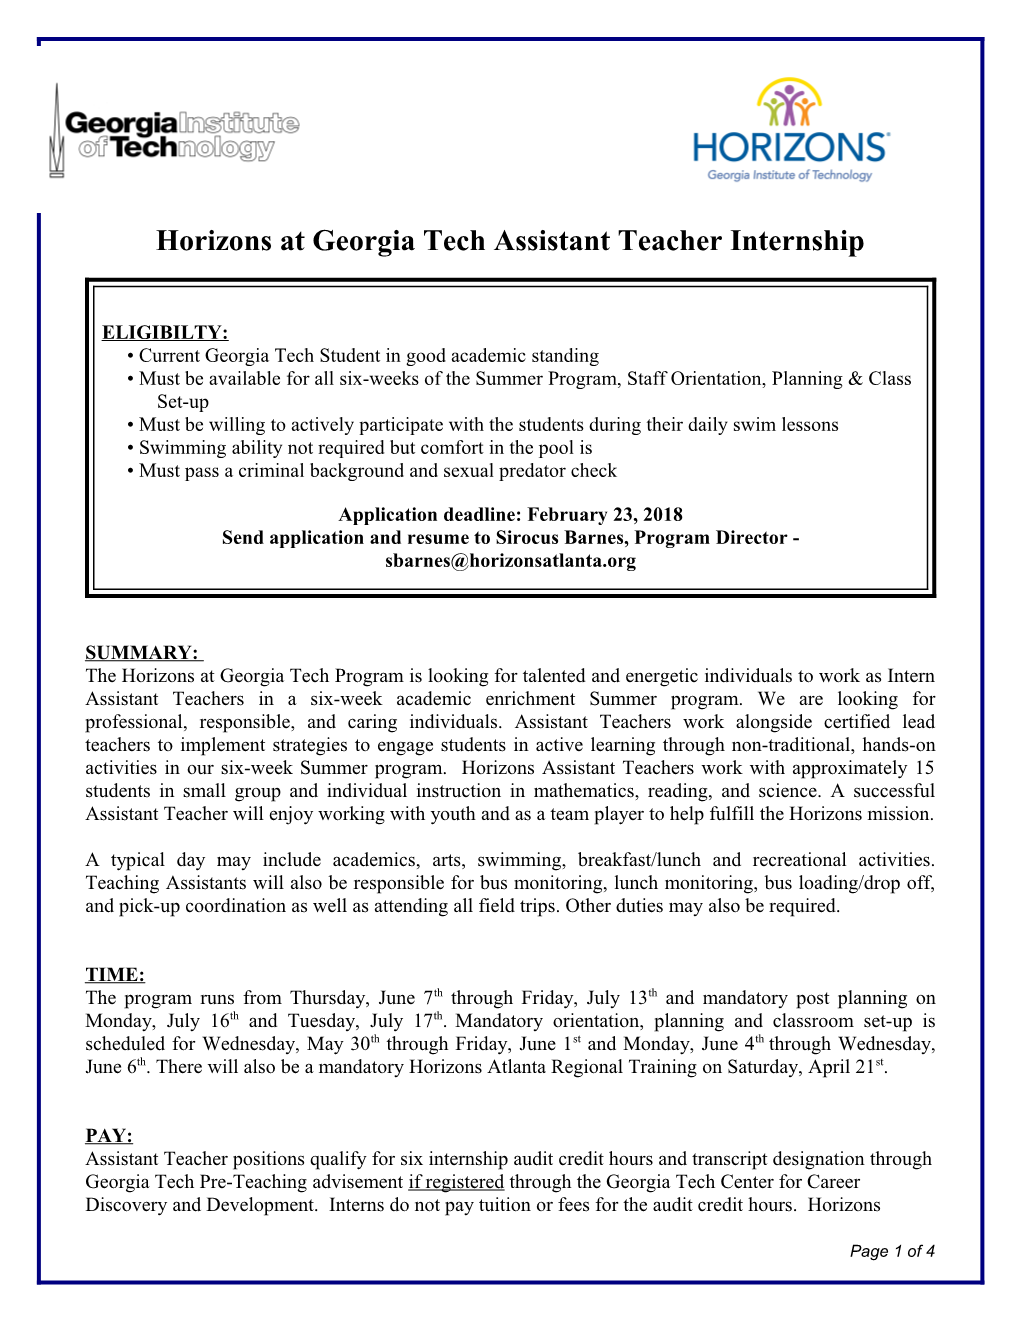 Horizons Atgeorgia Tech Assistant Teacher Internship